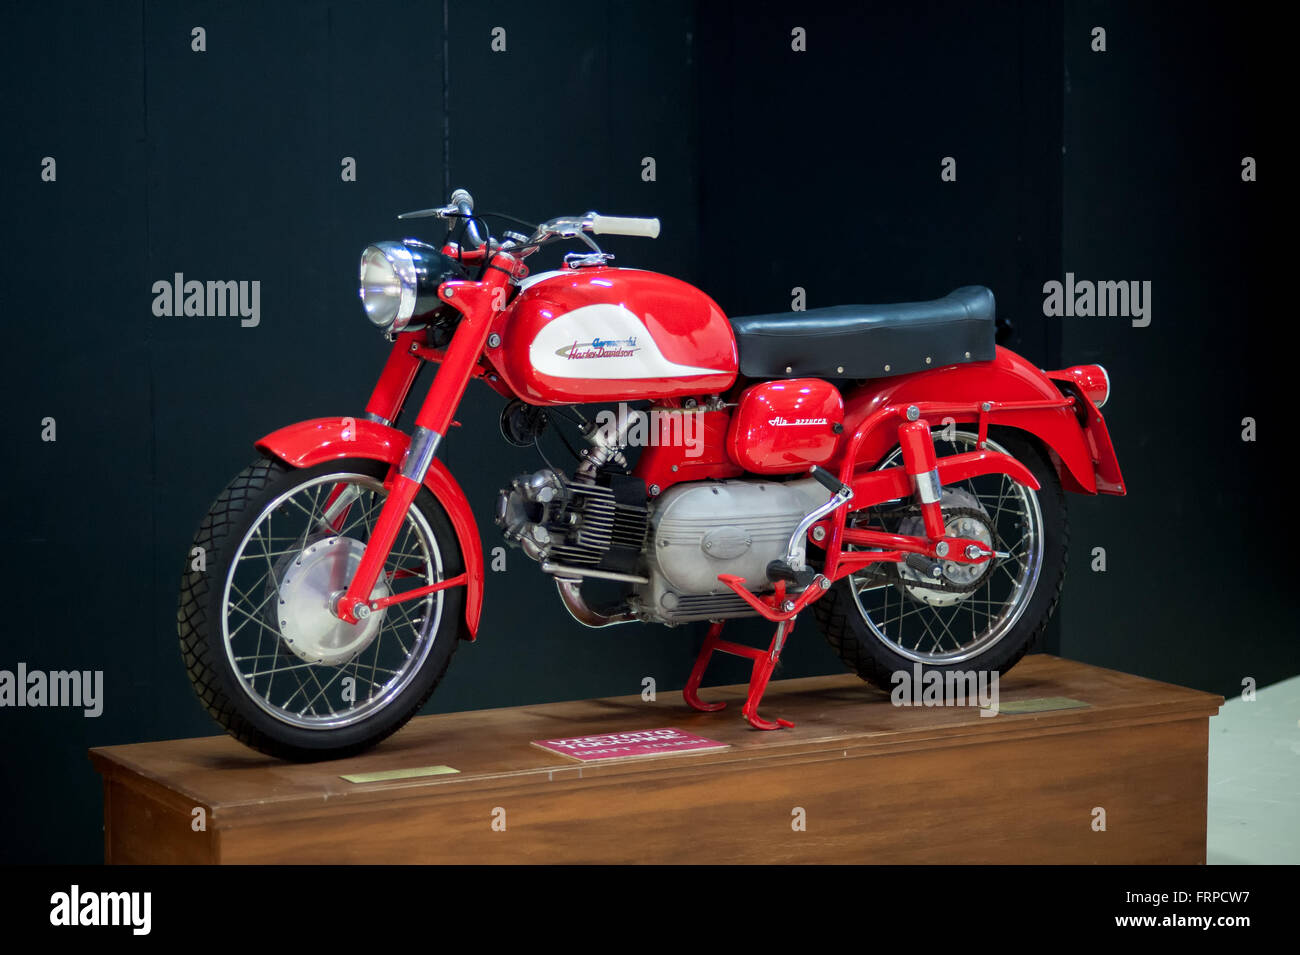 Einzelnes alte altmodisches rotes und weißes Harley Davidson - Aermacchi Motorrad auf hölzernen Display stellen Sie sich vor schwarzem Hintergrund Stockfoto